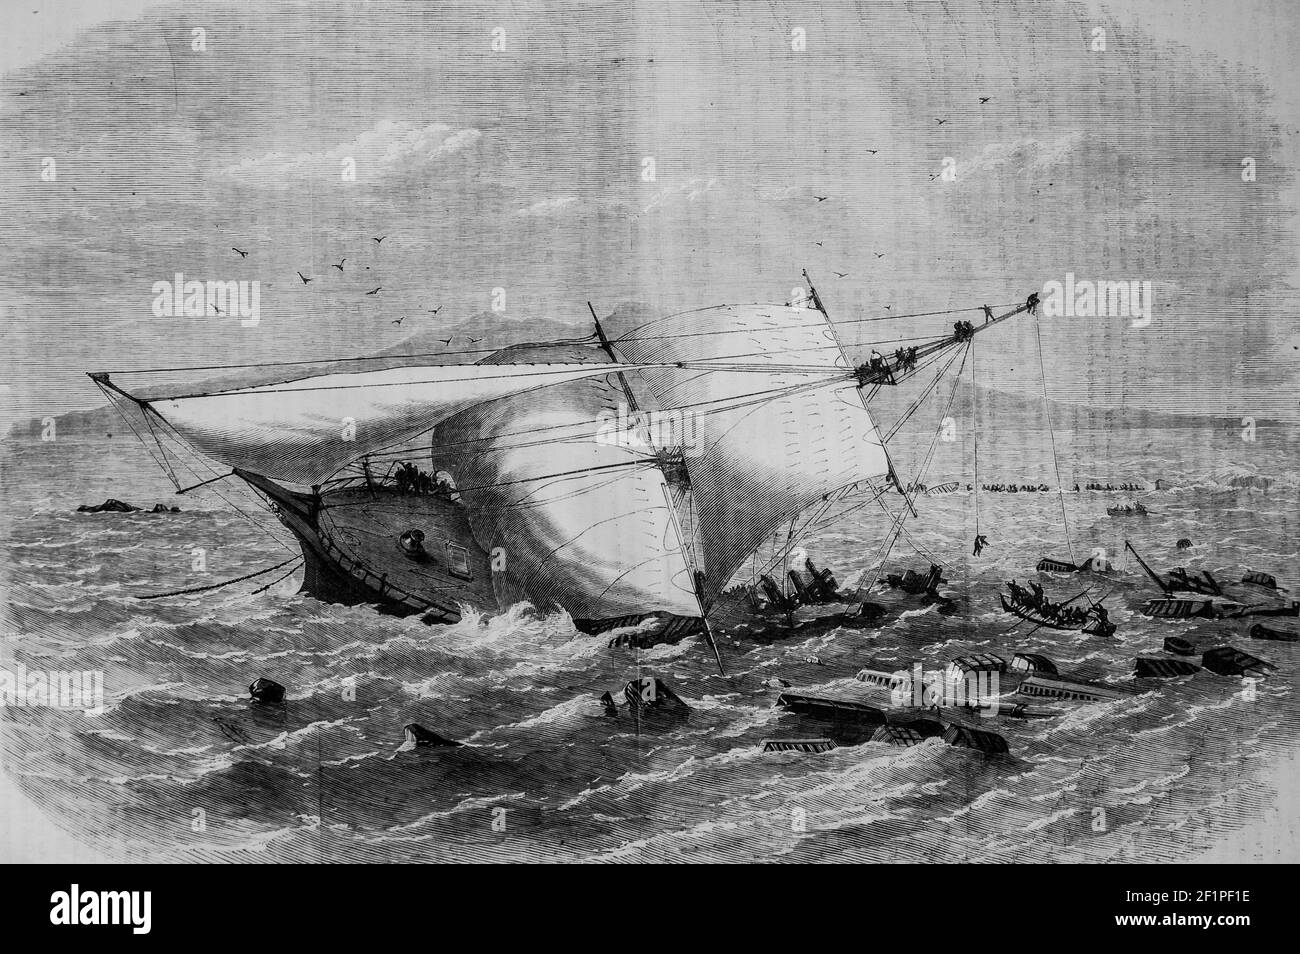 naufrage du batiment a vapeur carnatic dans la mer Rouge, l'univers illuste,editeur michele Levy 1869 Stockfoto